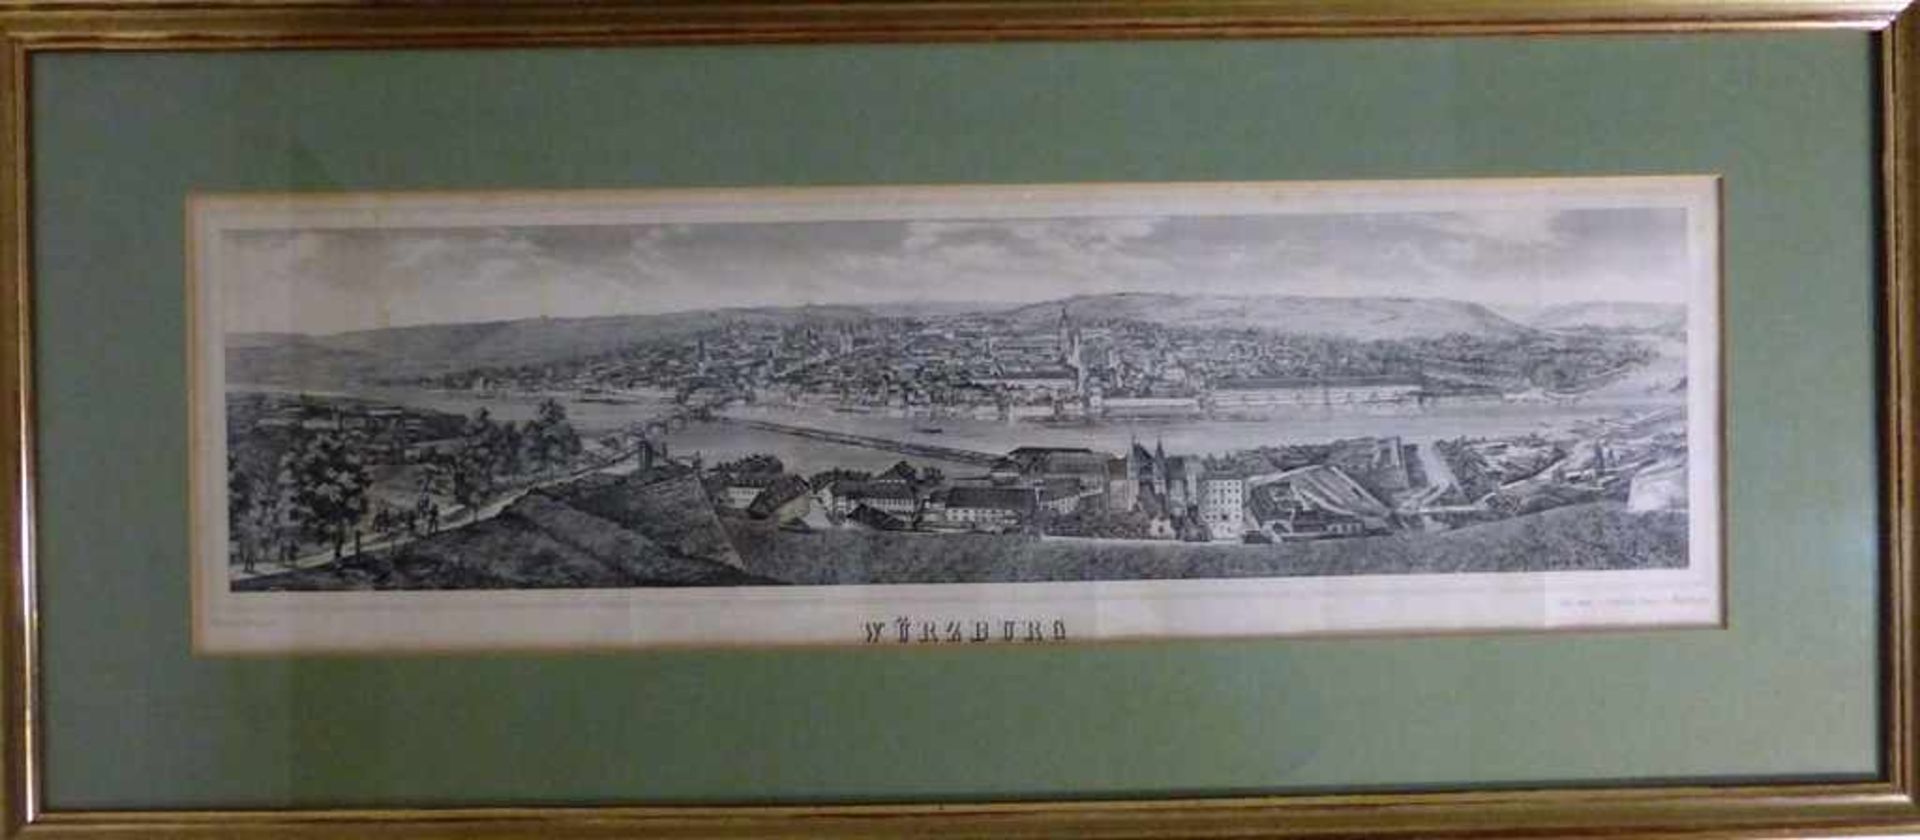 Schöner, Wilhelm, Lithographie 1852, Panoramaansicht der Stadt Würzburg mit dem Maintalvon der